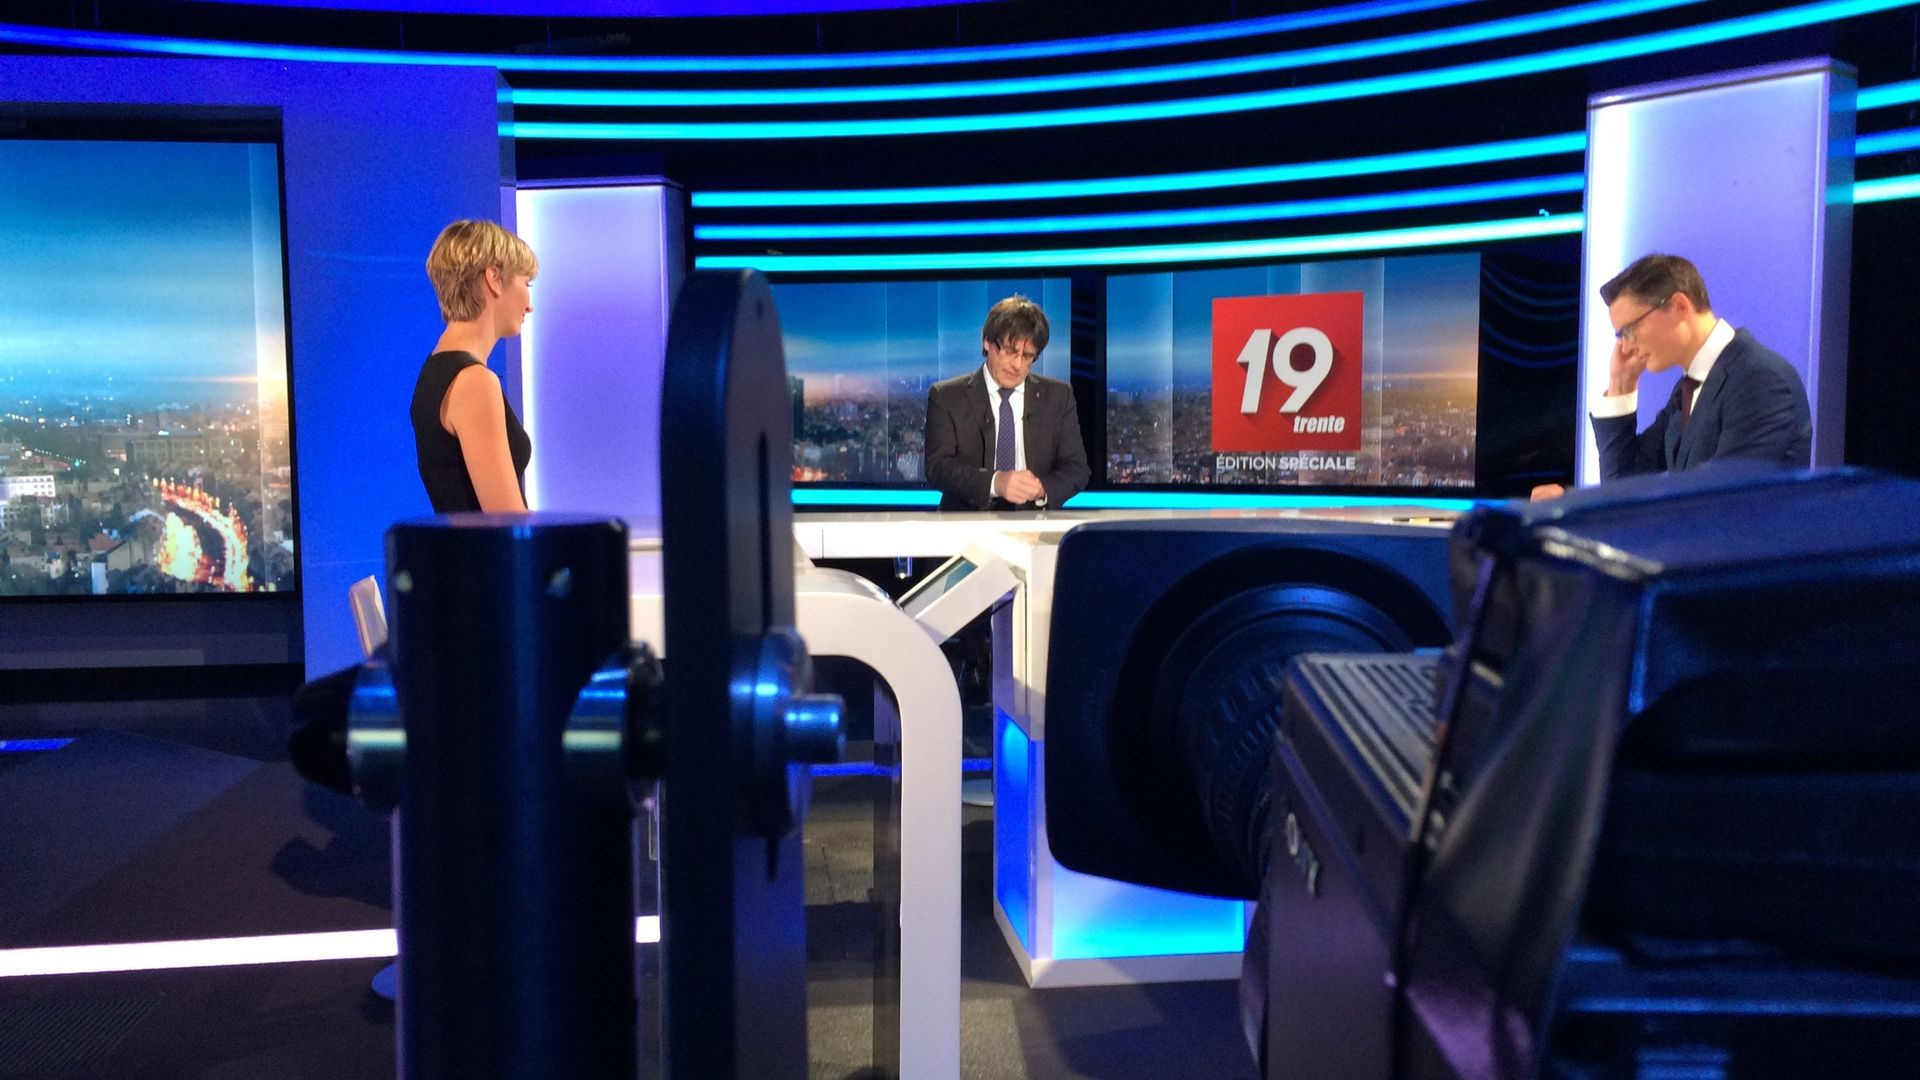 Carles Puigdemont interviewé par Julie Morelle et Quentin Warlop sur le plateau du JT de 19h30 i